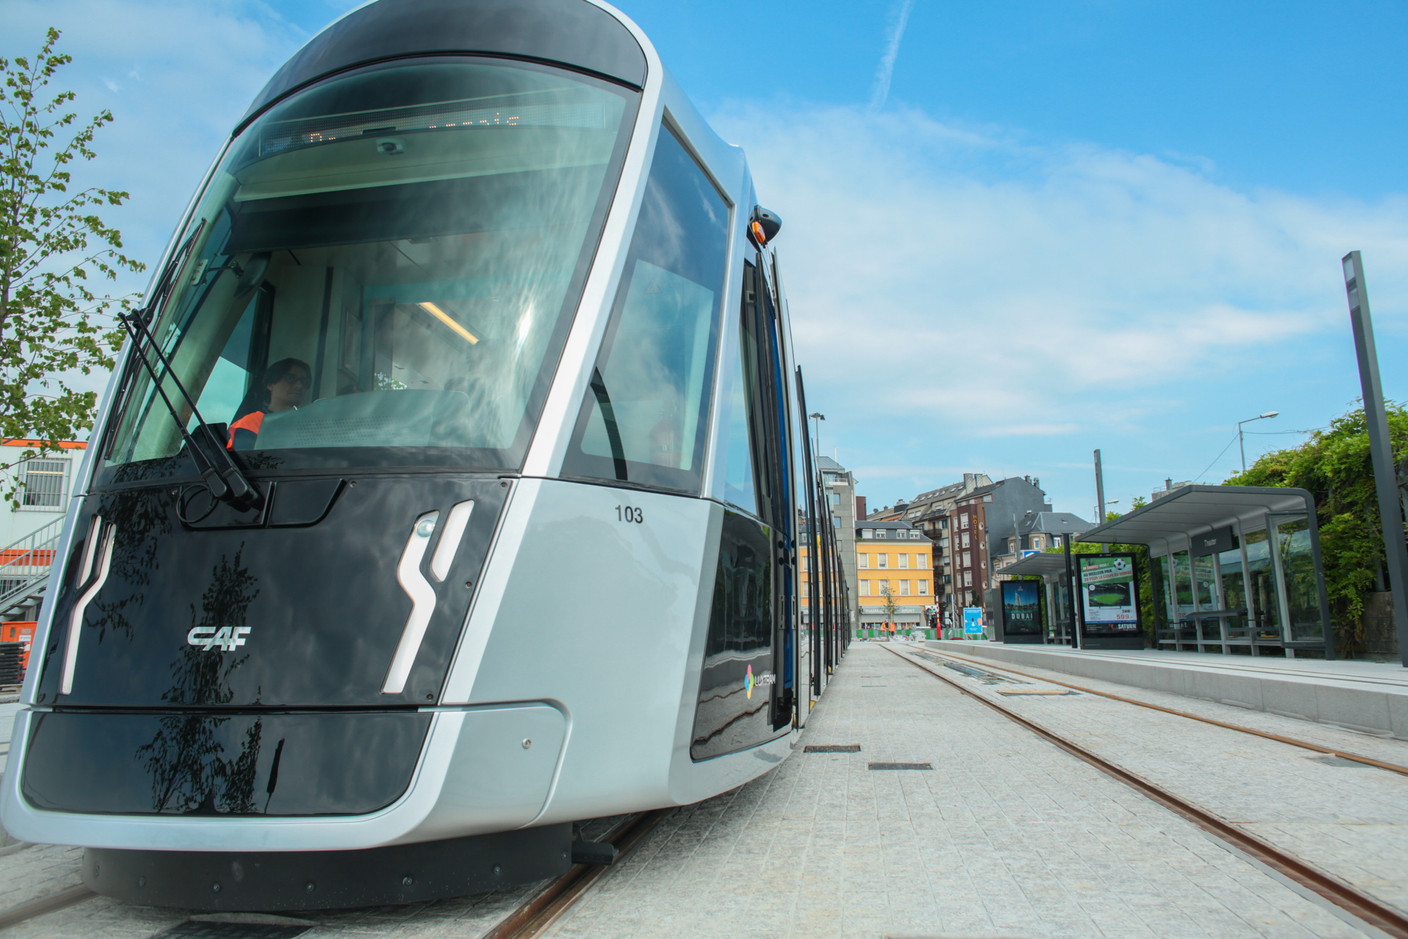 Le tramway luxembourgeois devrait connaître sa prochaine extension d’ici la fin de l’année en arrivant à la gare.  (Photo: Matic Zorman/Maison Moderne)